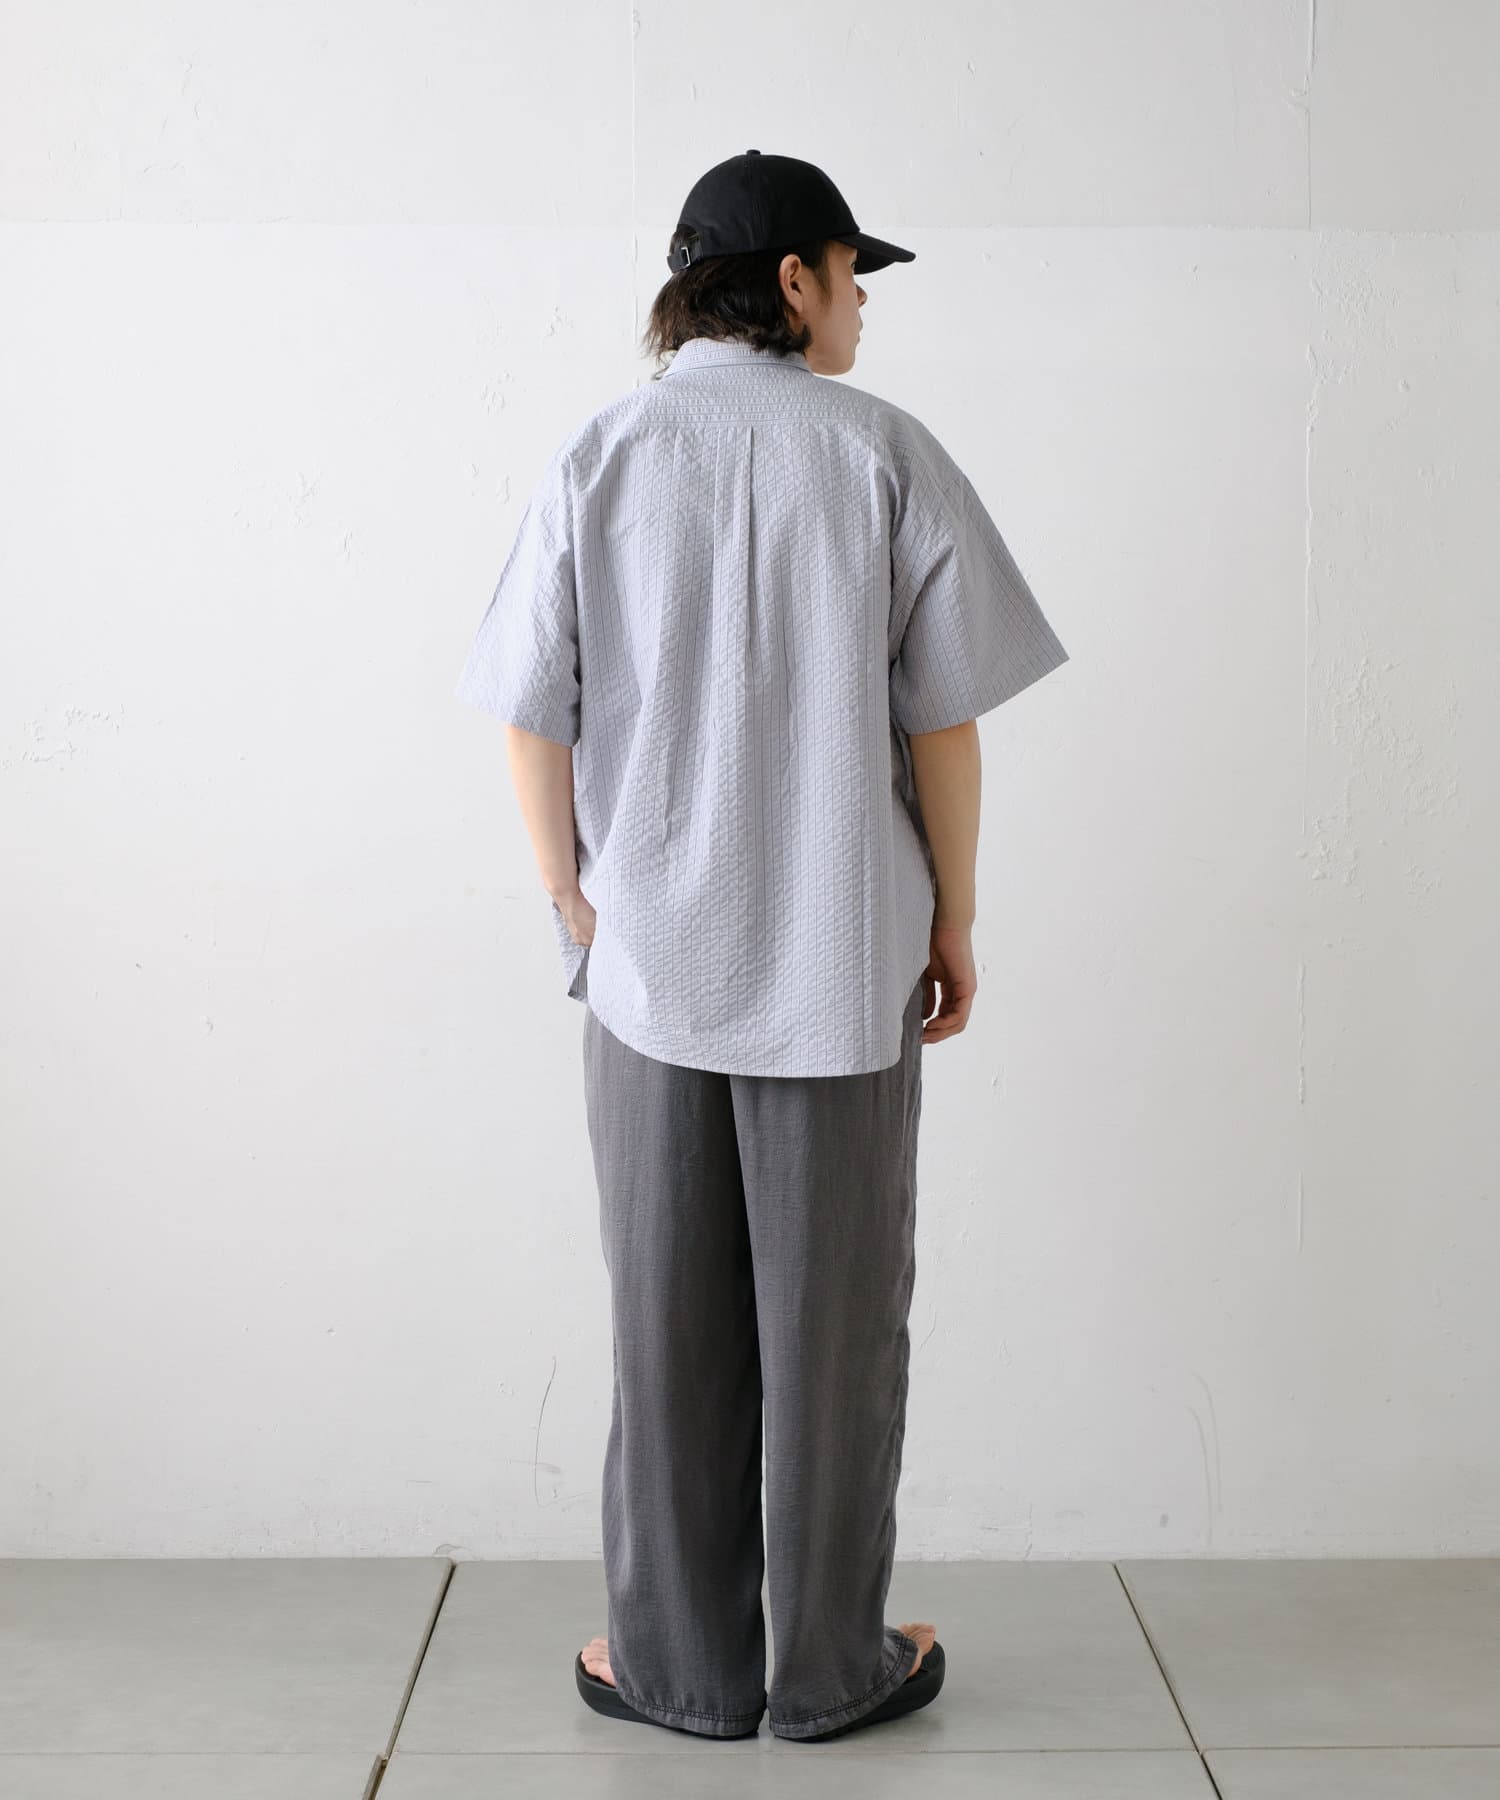 Kastane(カスタネ) 【WHIMSIC】ショートスリーブフィッシングシャツ